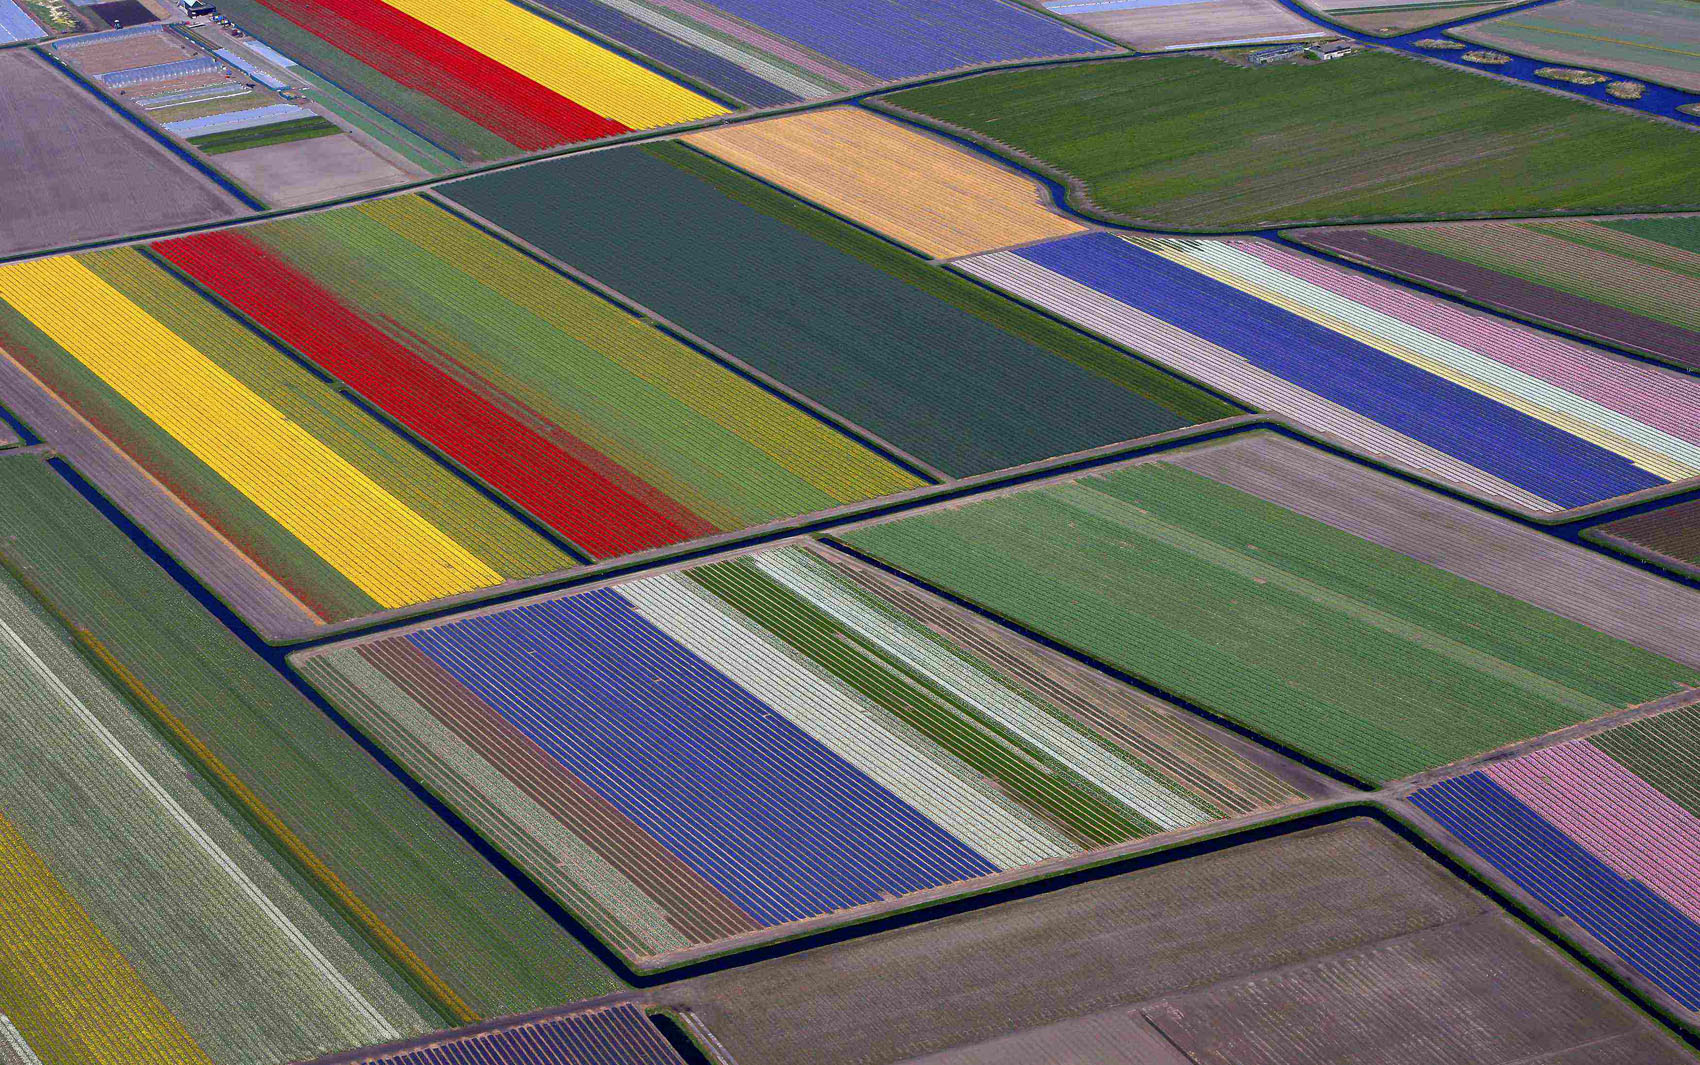 Fotos aéreas mostram campos floridos na Holanda - fotos em Turismo e